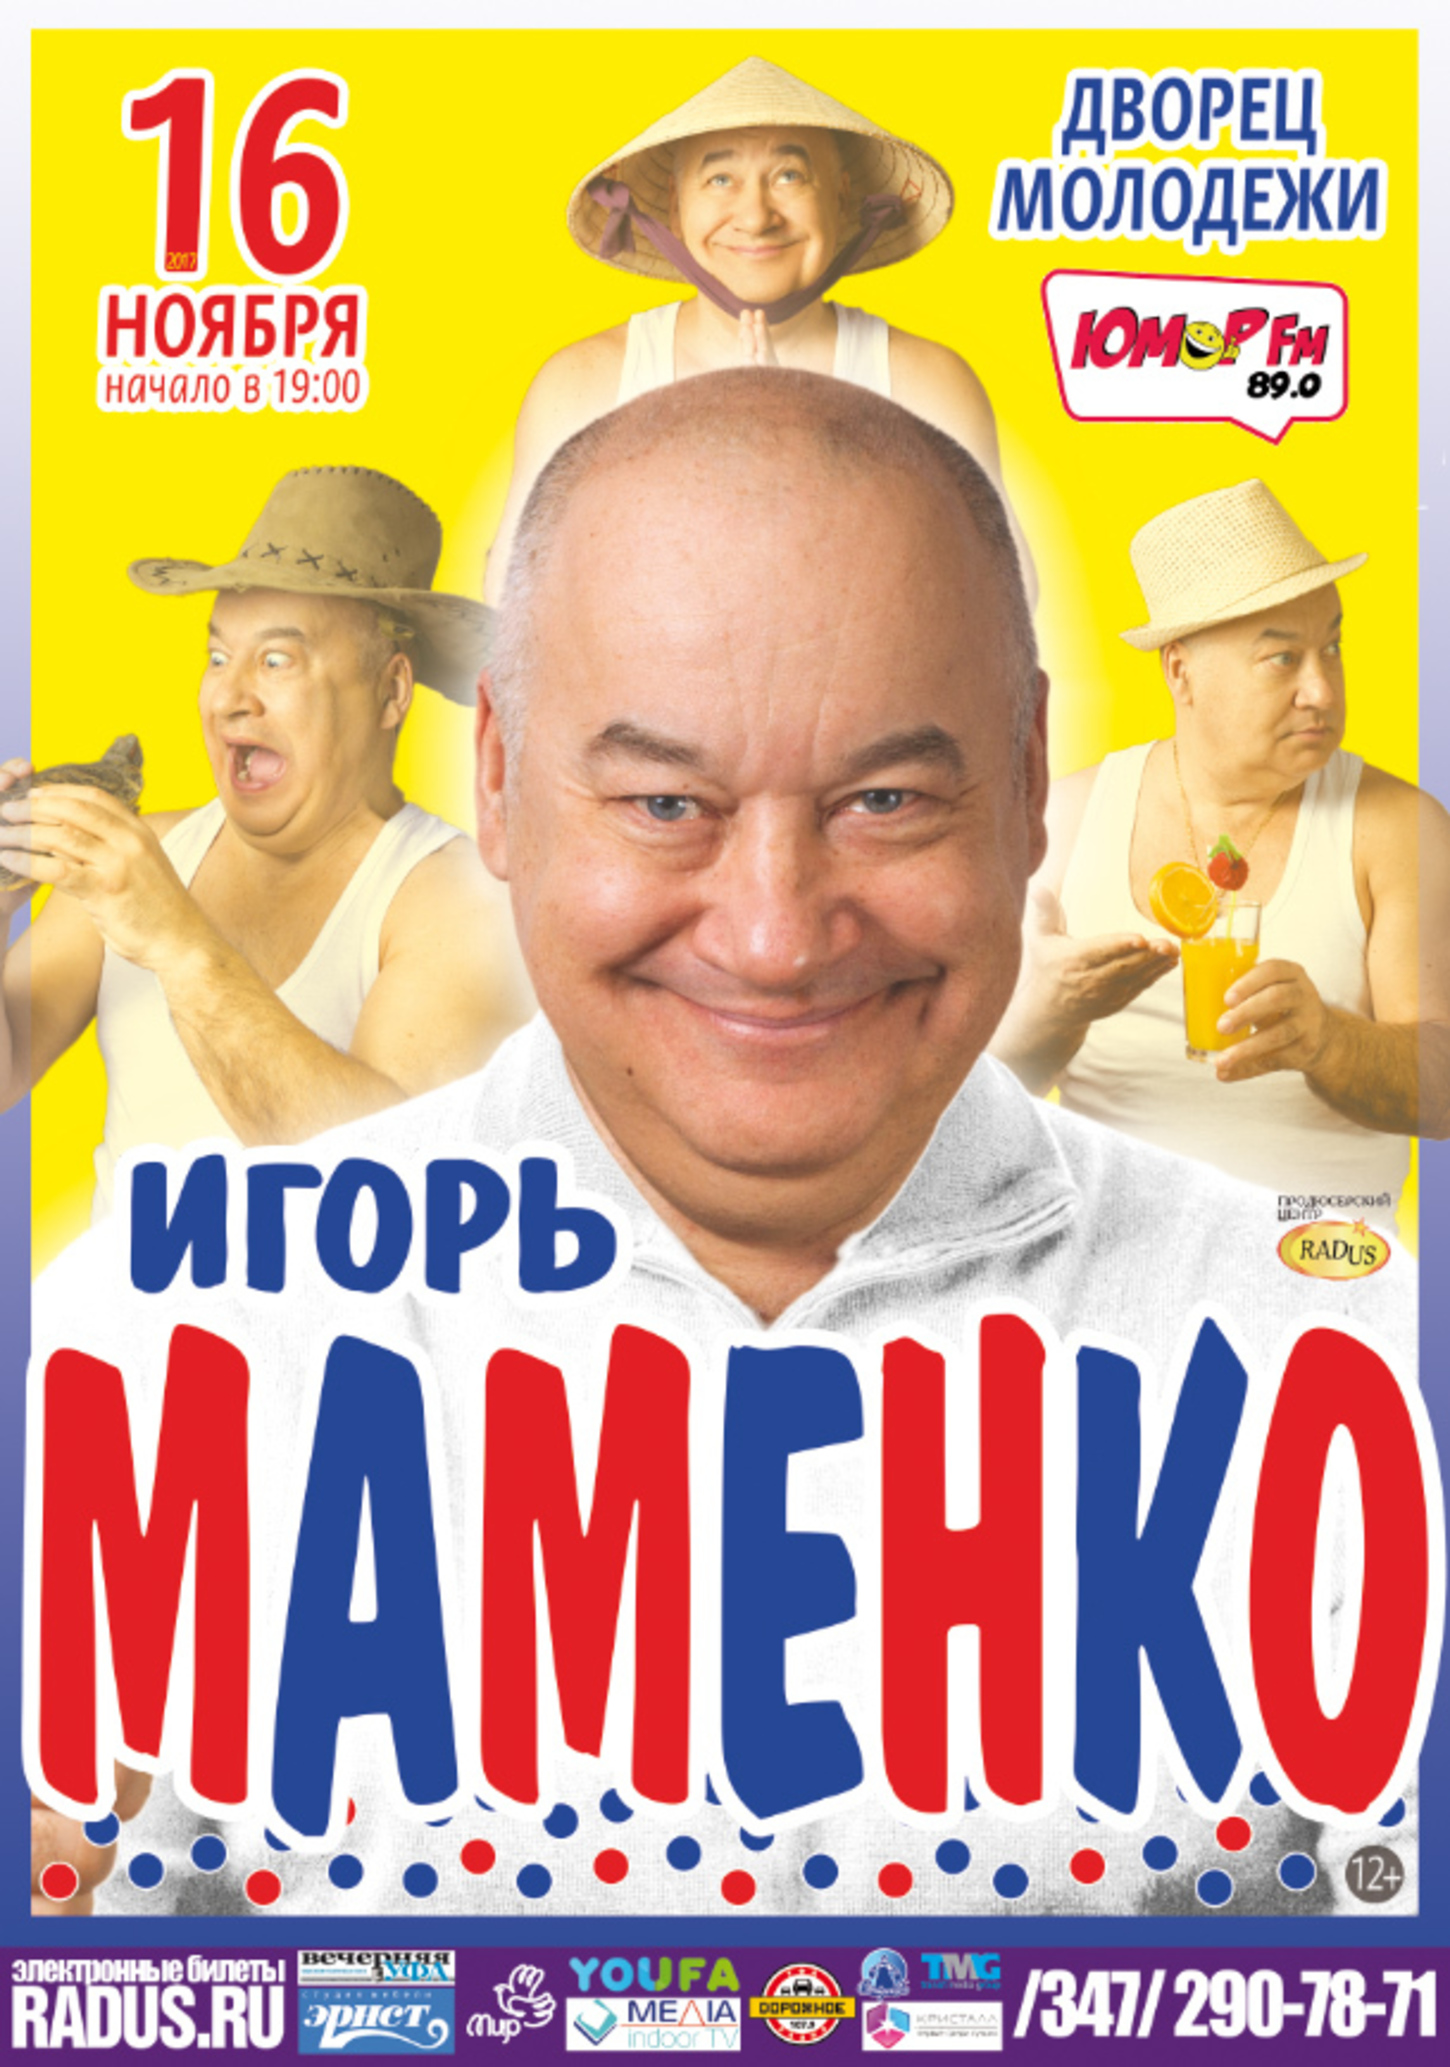 Игорь Маменко анекдоты